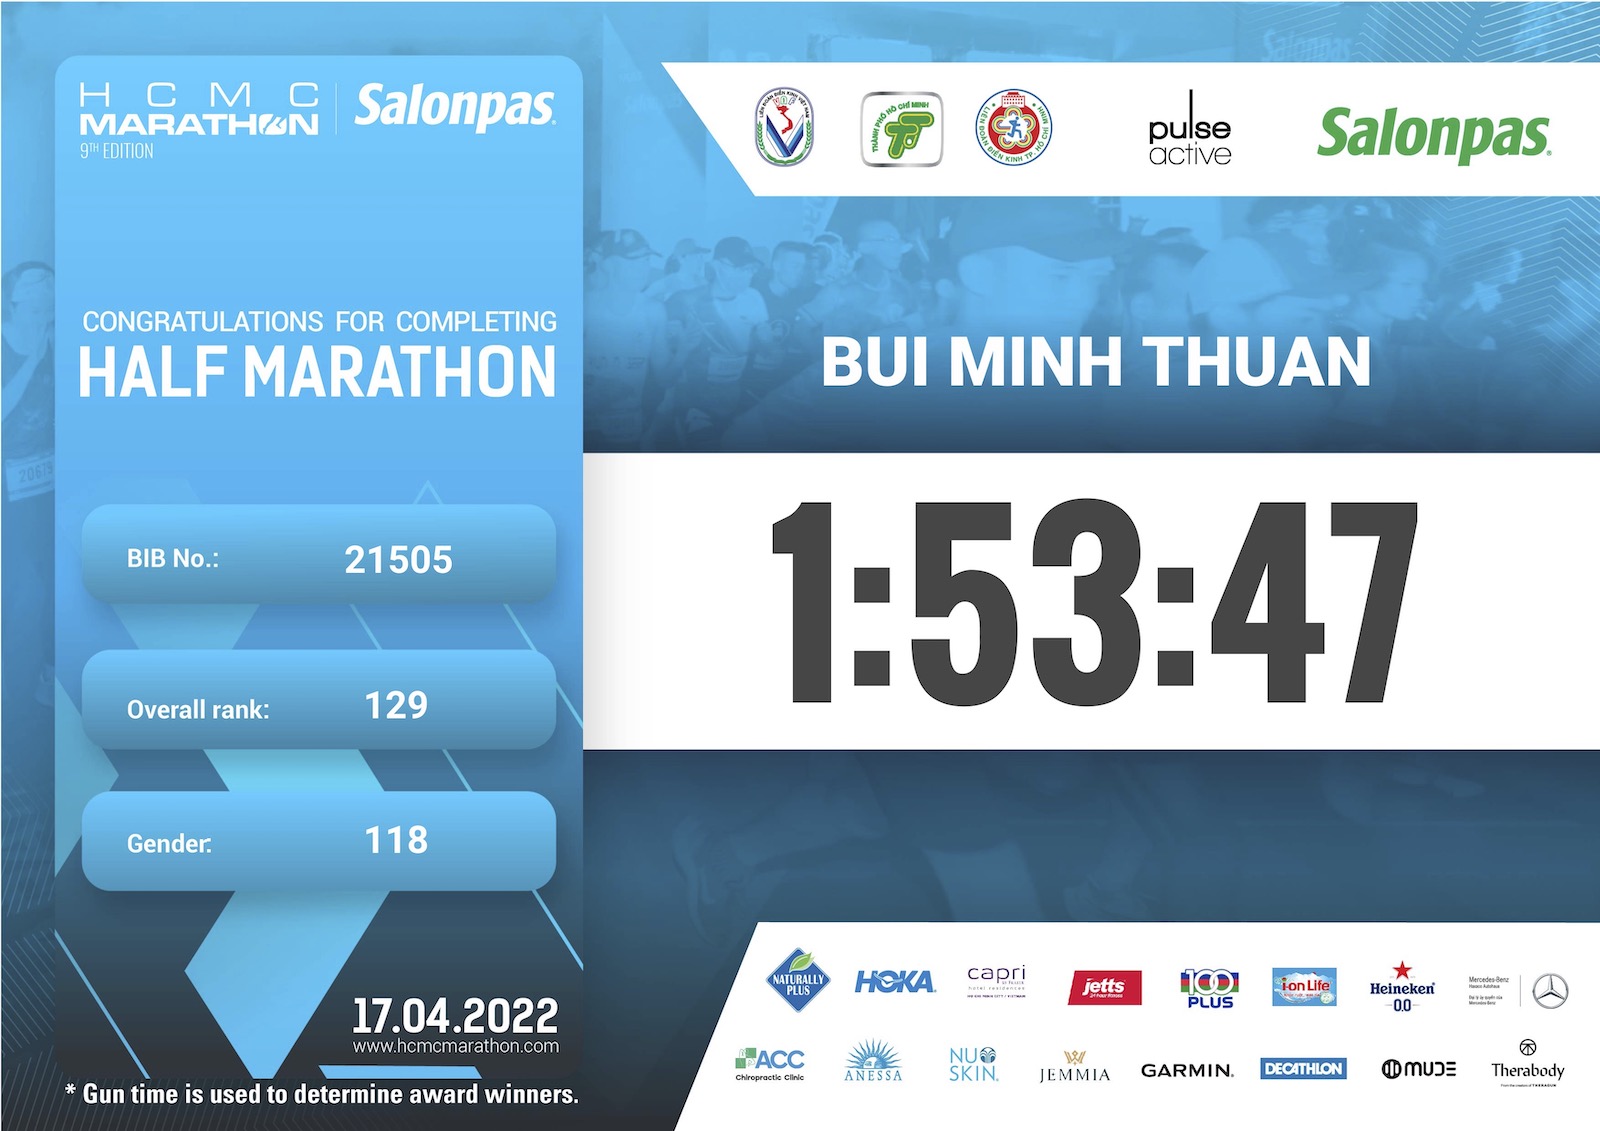 Kí sự HCMC Marathon 2022 - Lần đầu đua 21K với vợ - hcmc marathon 2022 certificate